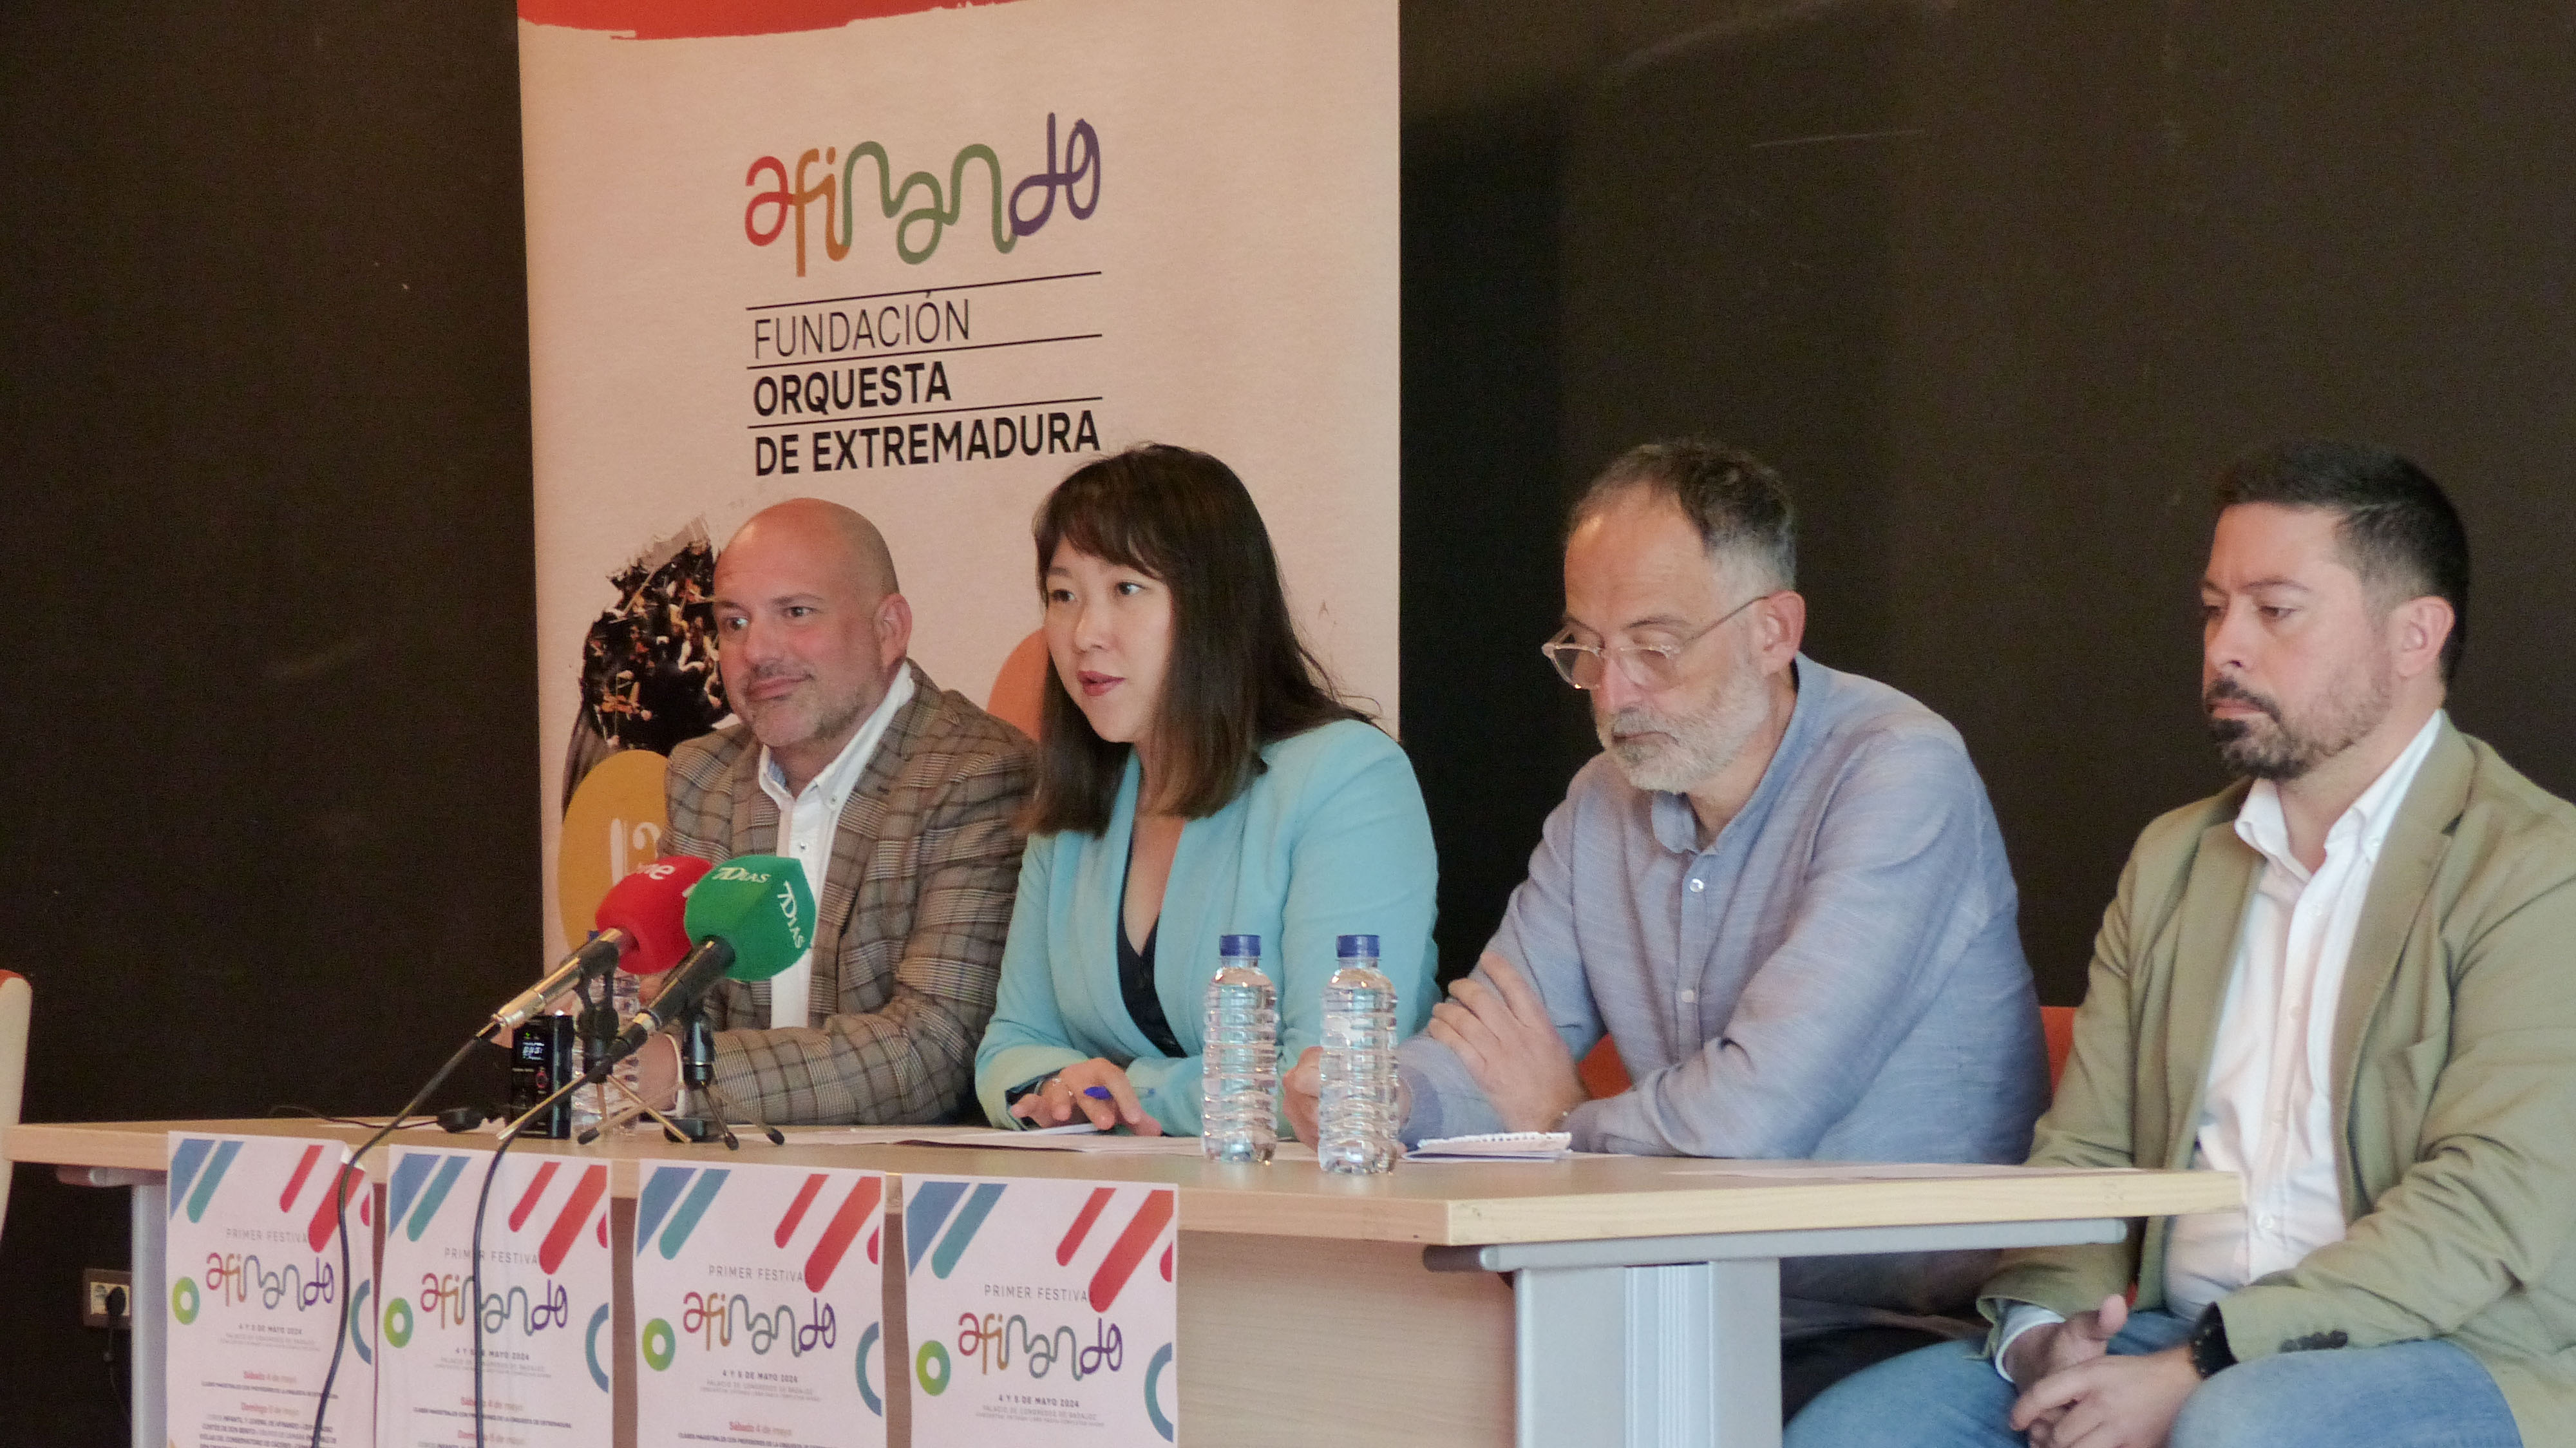 Image 2 of article La Fundación Orquesta de Extremadura celebra el I Festival Afinando con un programa de conciertos, talleres y una exposición